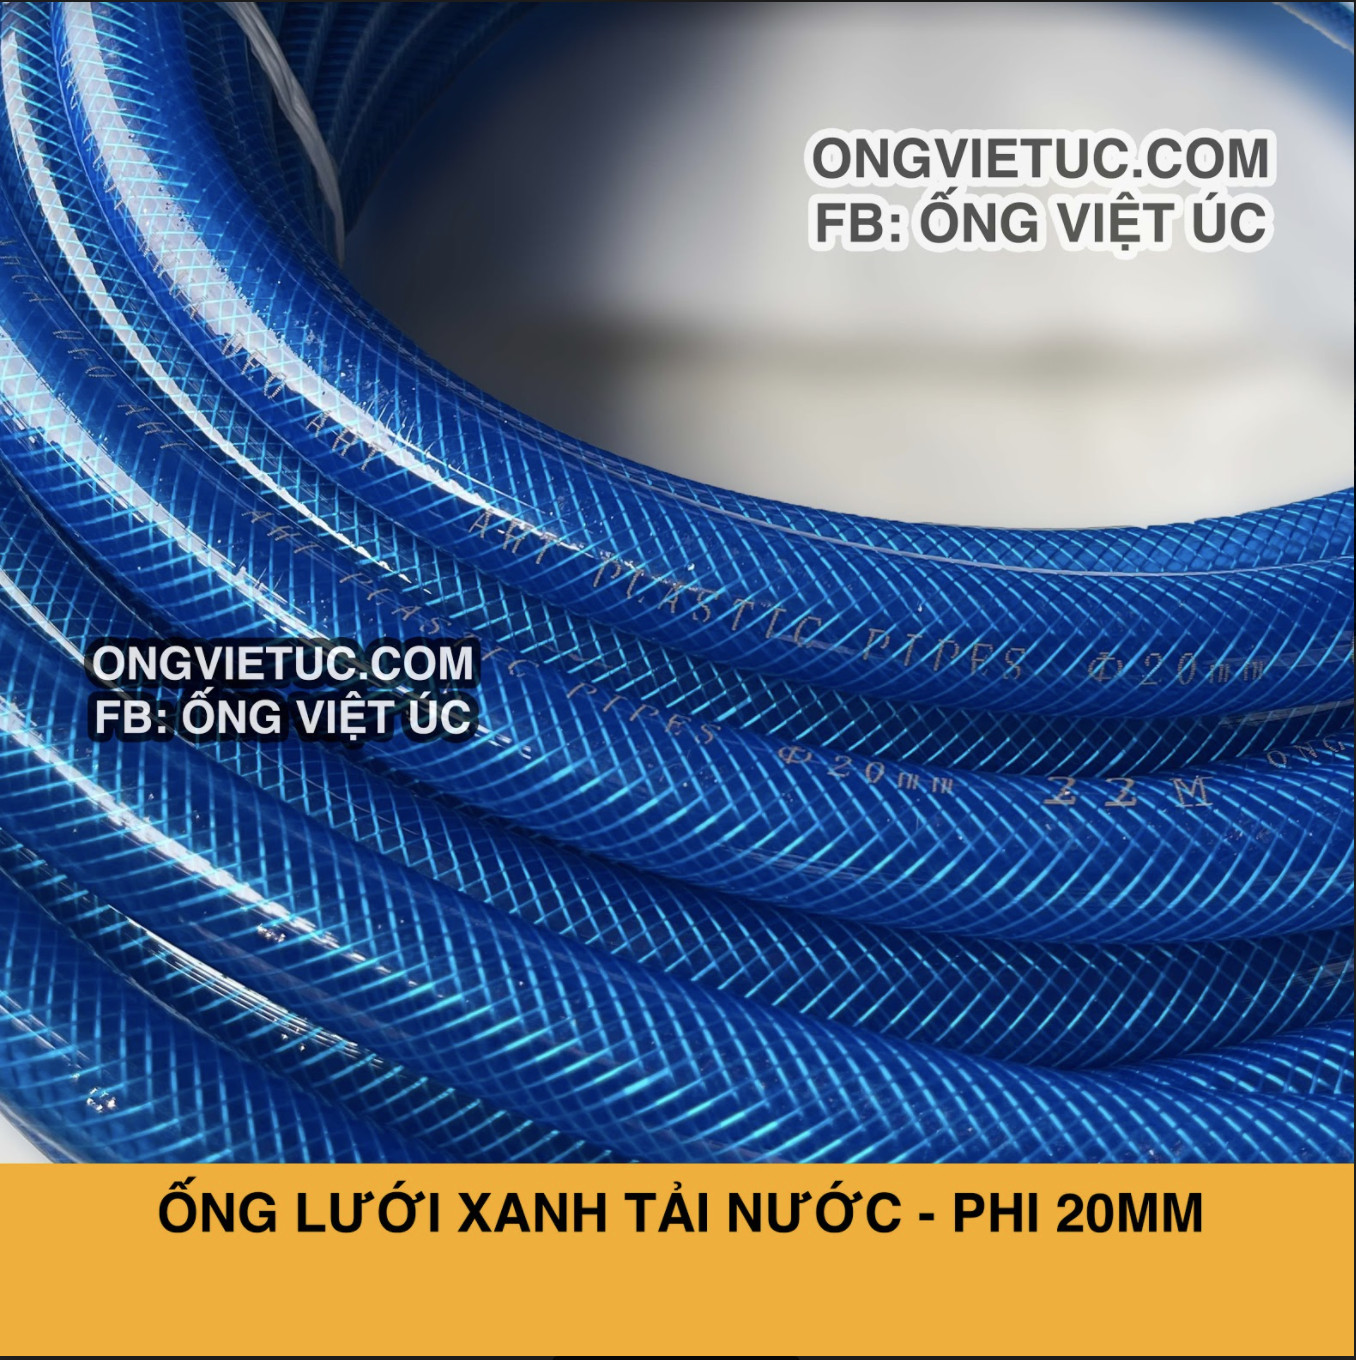 Ống nhựa lưới xanh Việt Úc Phi 20mm - Cuộn 50m - hàng chính hãng AHT